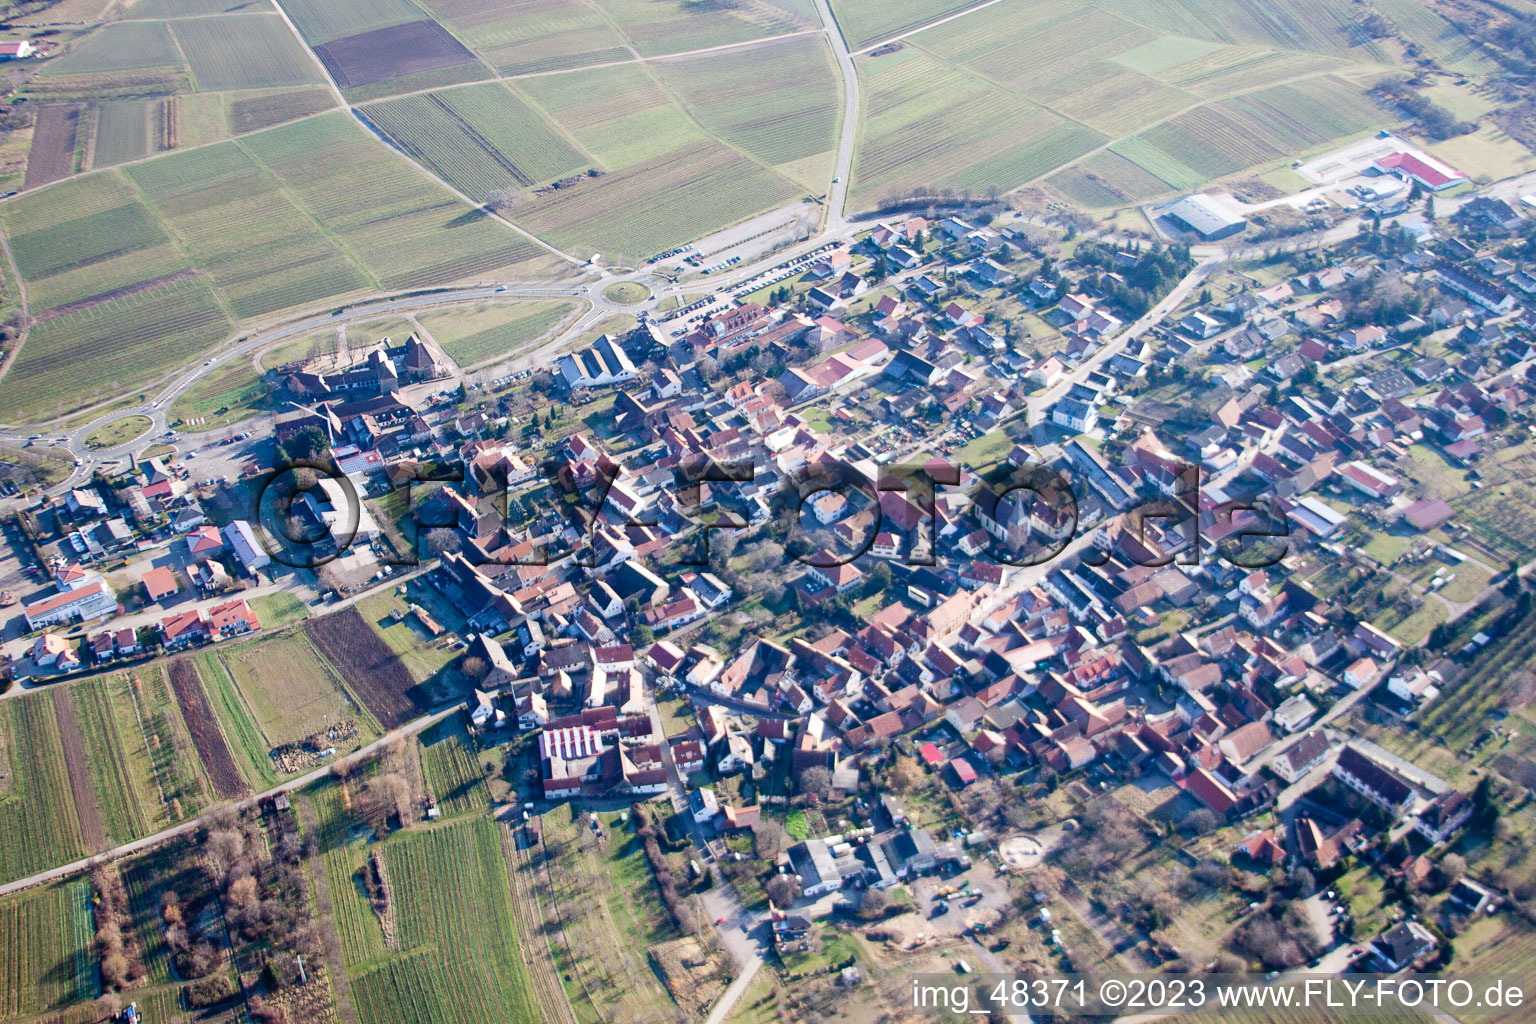 District Schweigen in Schweigen-Rechtenbach in the state Rhineland-Palatinate, Germany seen from a drone